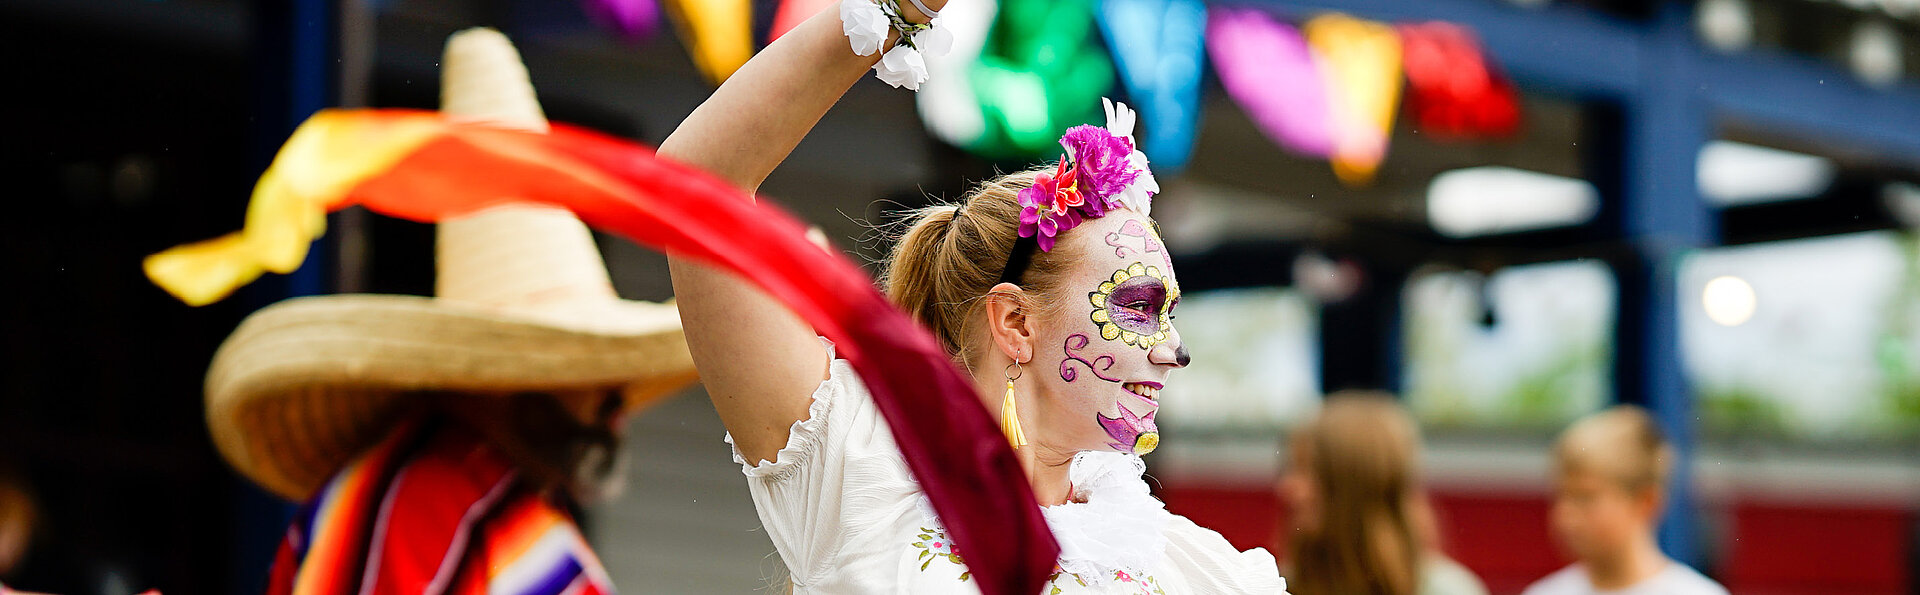 Beim FORT FUN Event Mexican Summer tanzt eine bunt geschminkte Künstlerin.